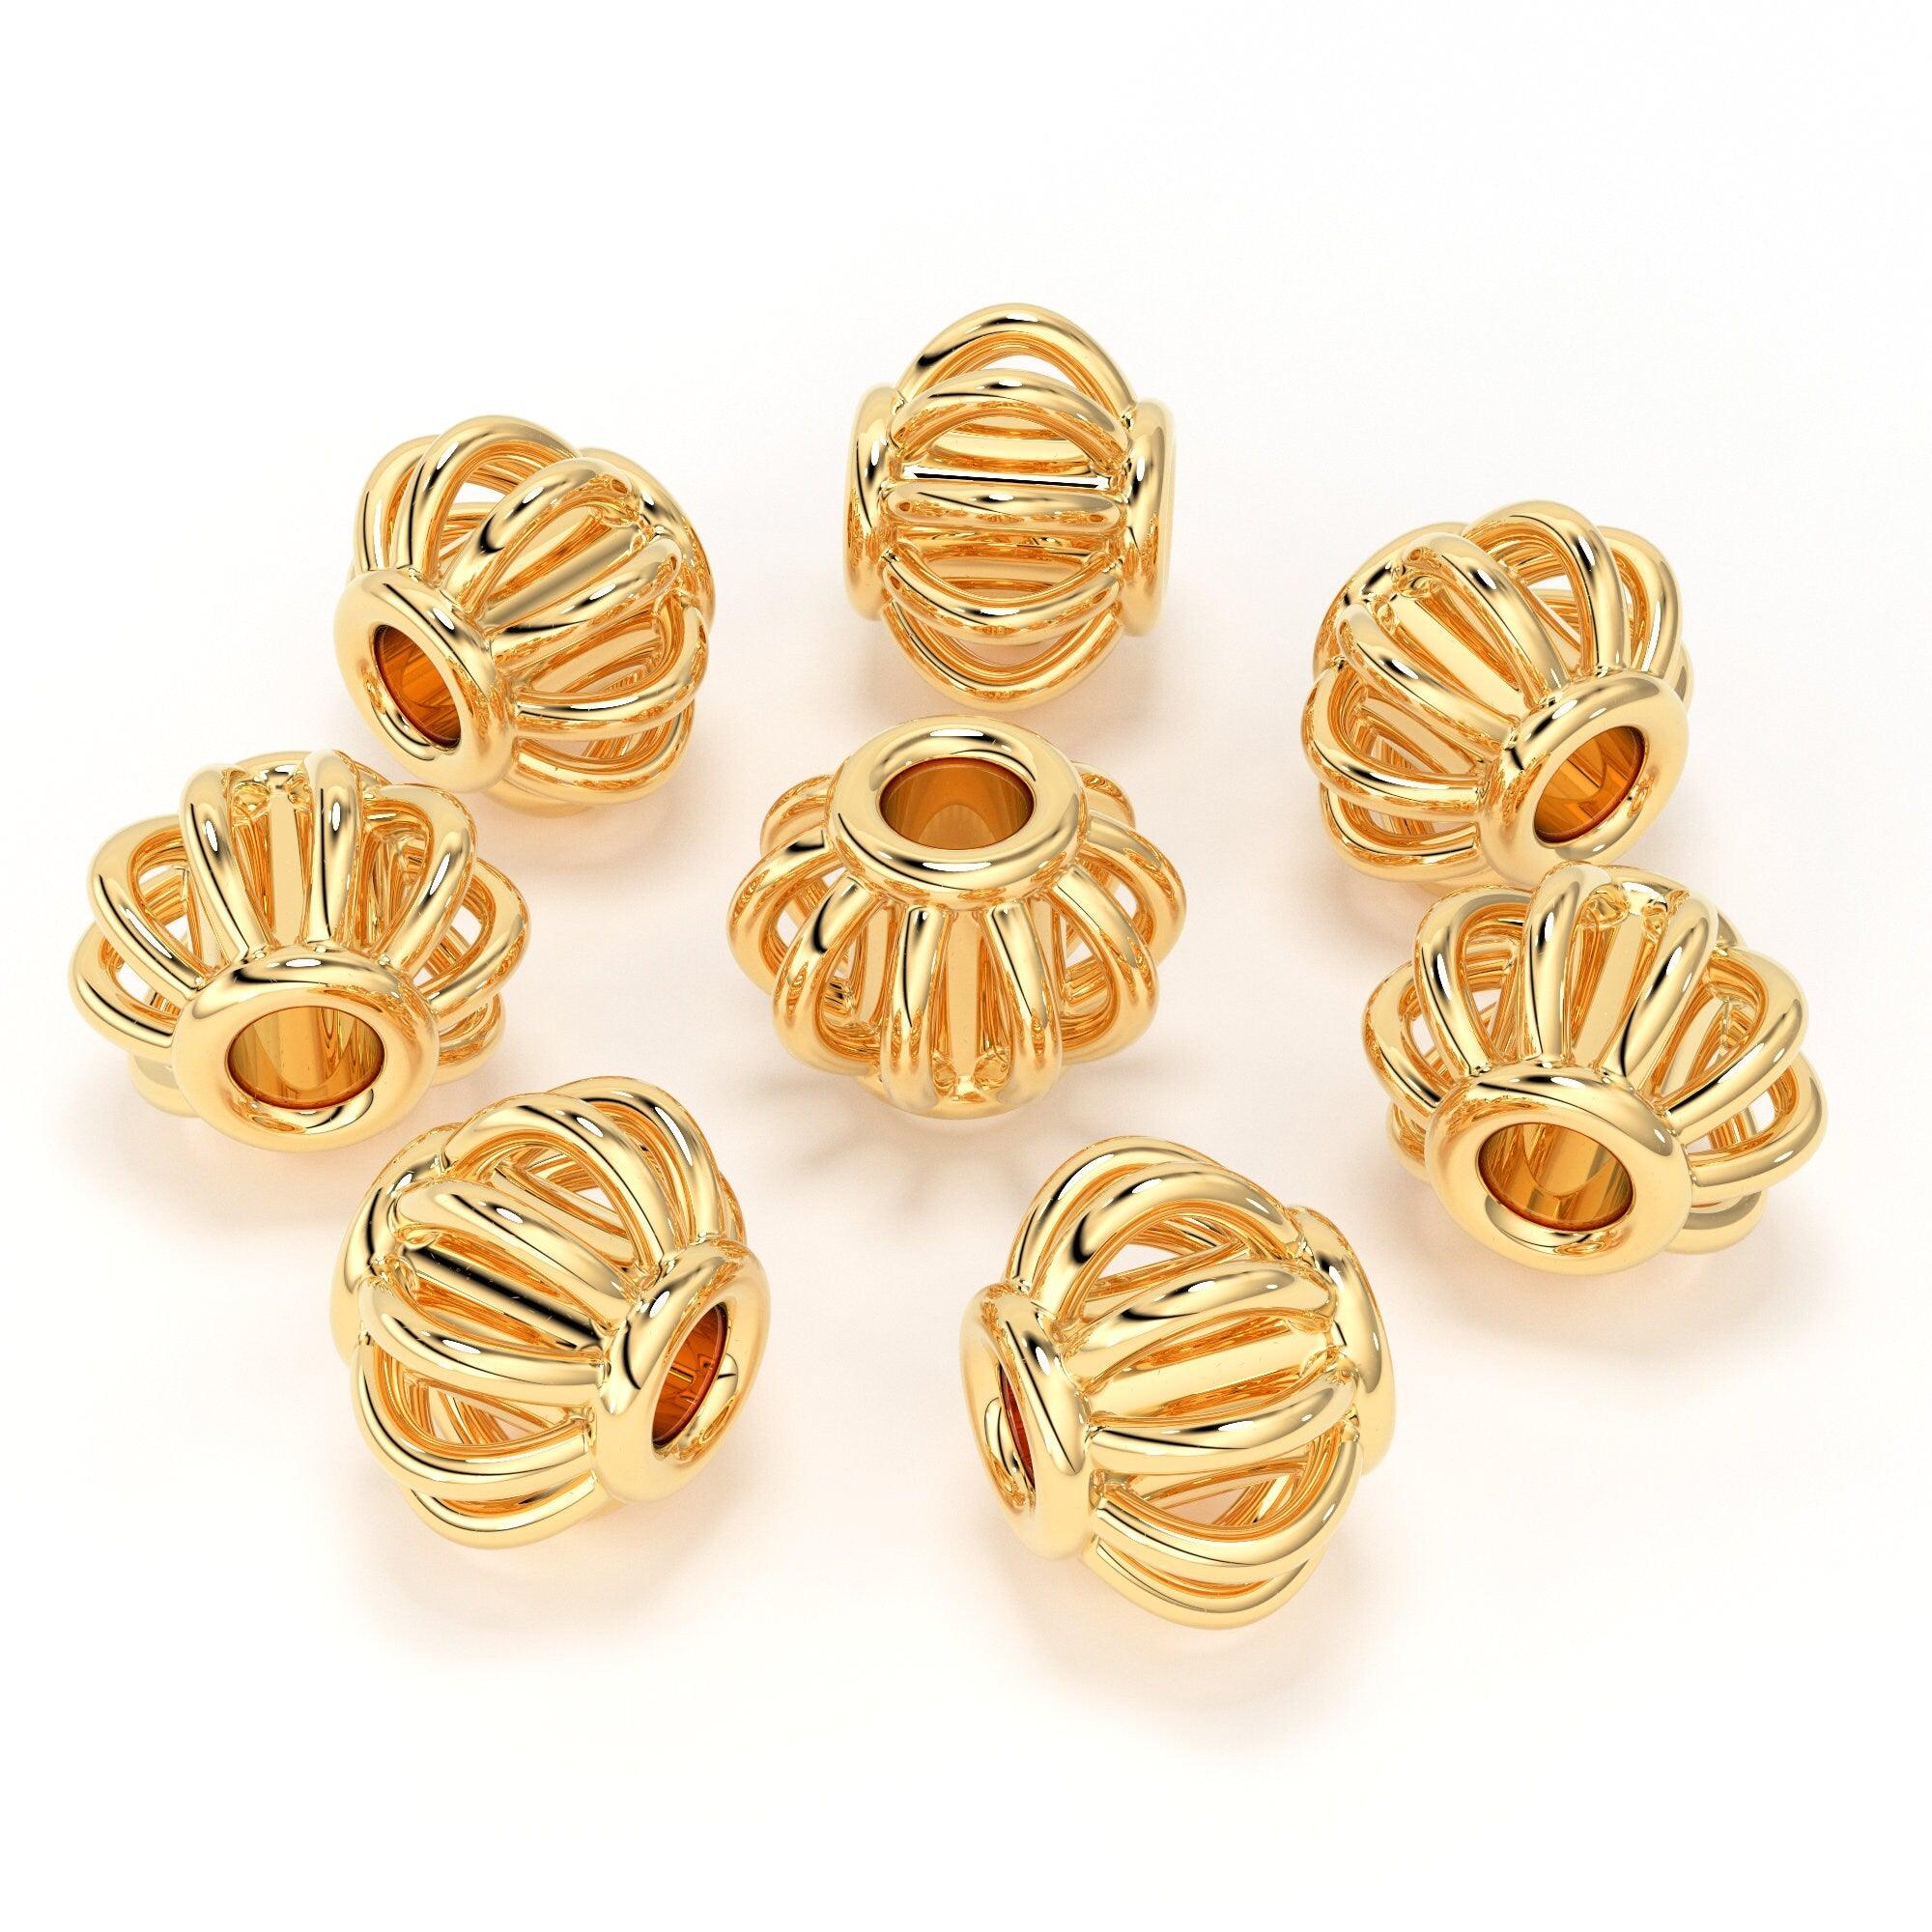 Fancy Gold Earring Bali at best price in Rajkot | ID: 26756789233